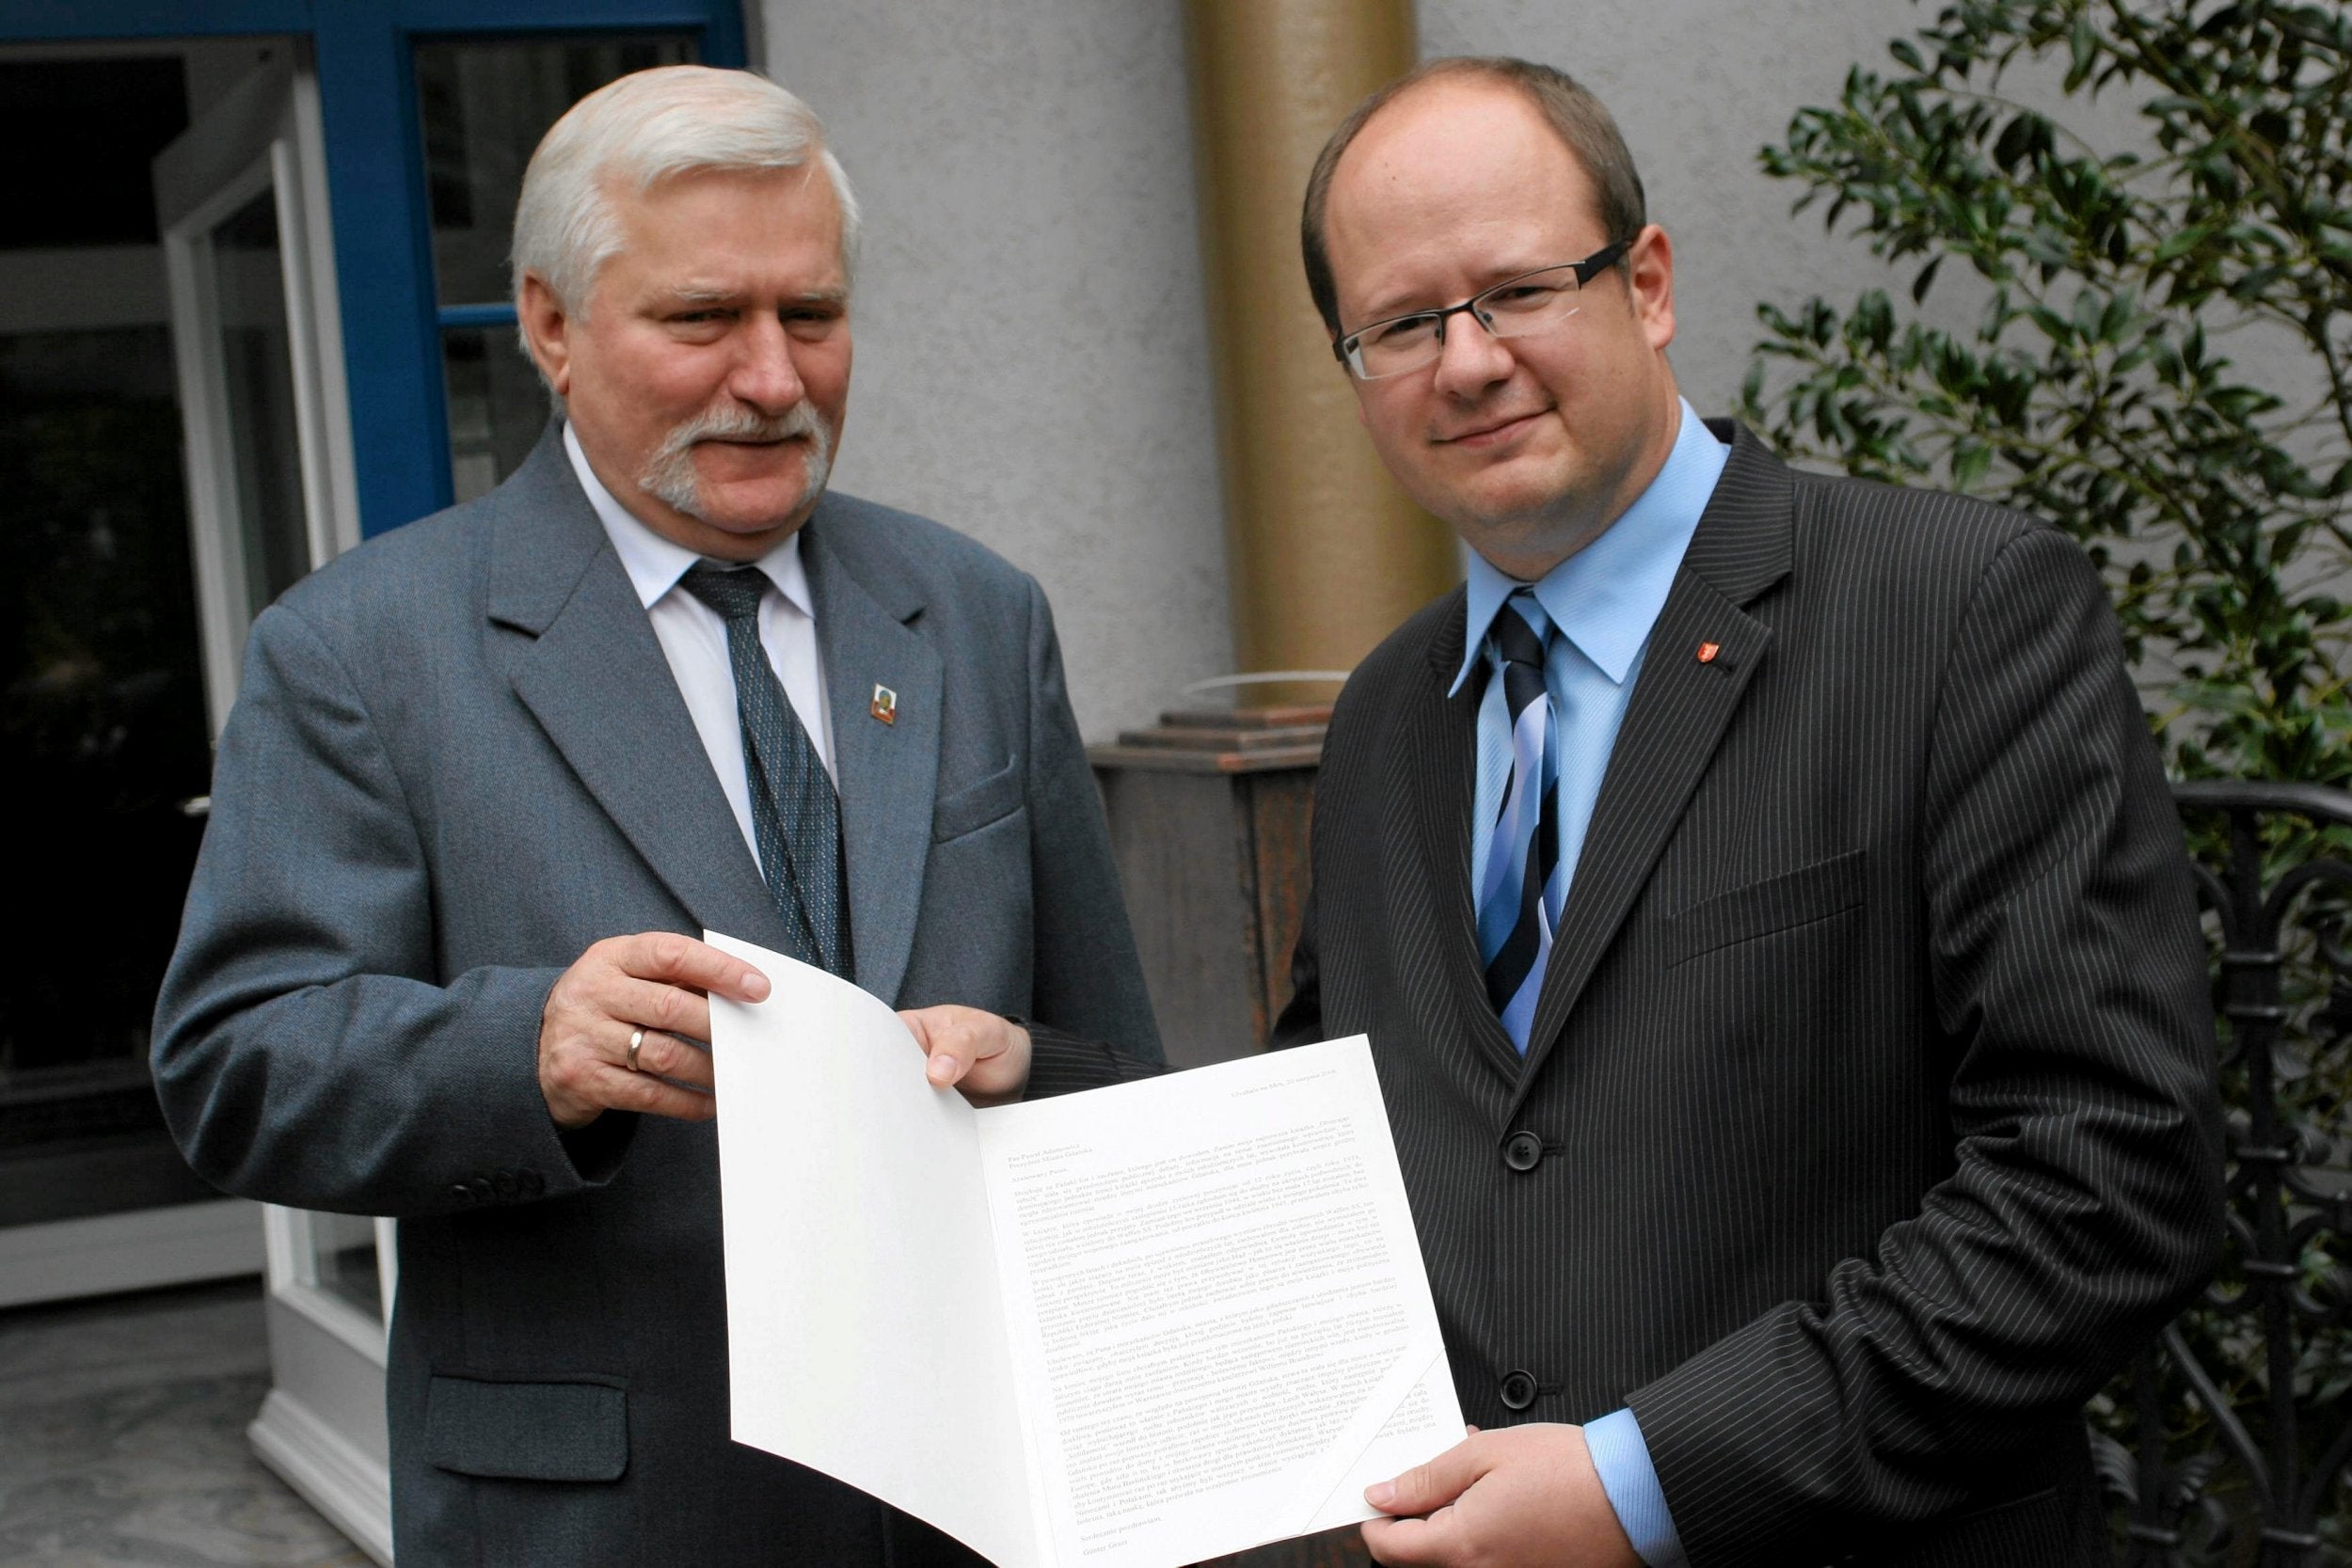 Adamowicz with former president Lech Walesa in Gdansk, 2006